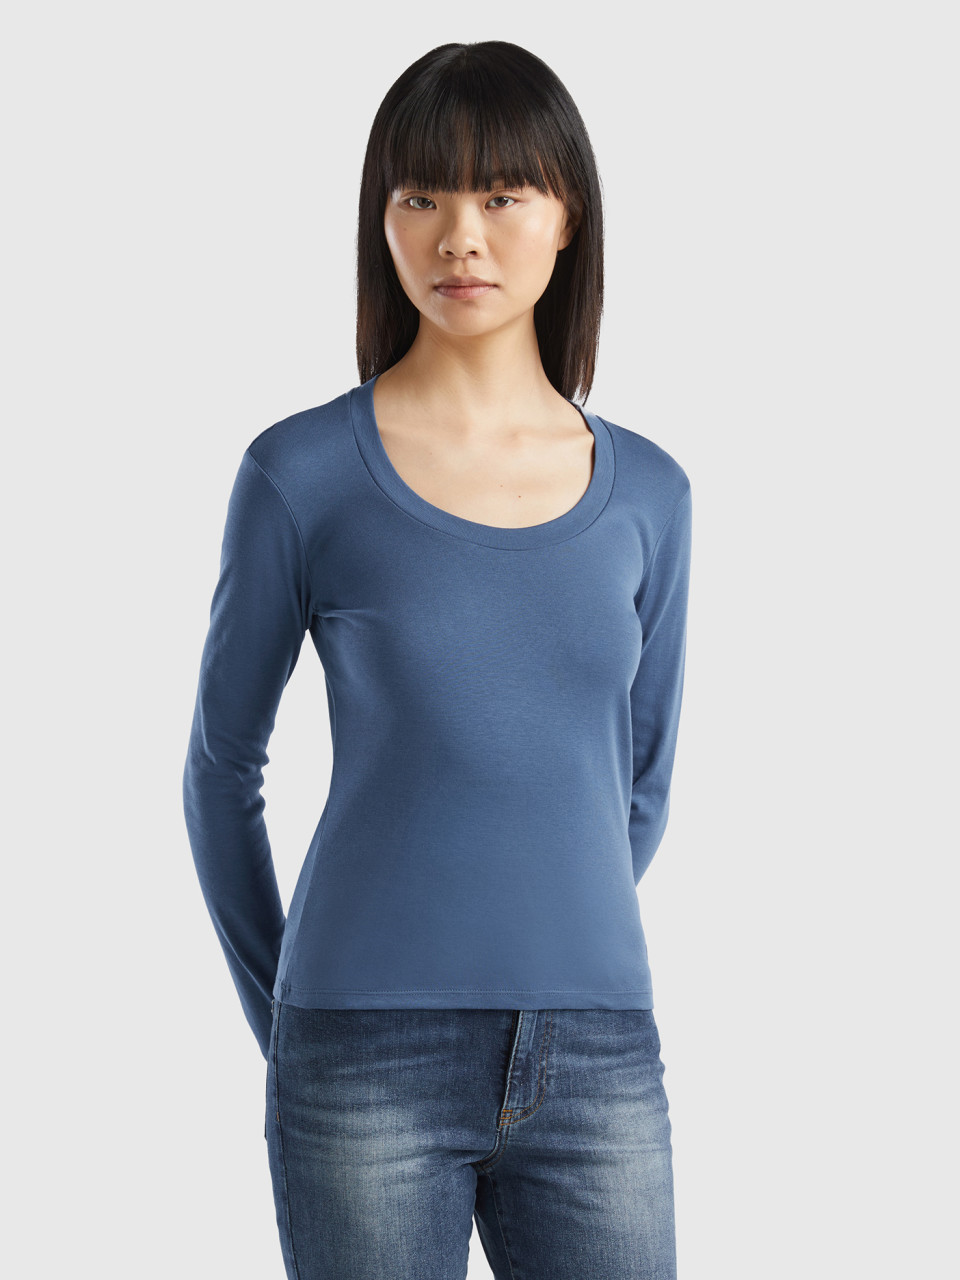 Benetton, Long Sleeve Pure Cotton T-shirt, Air Force Blue, Women